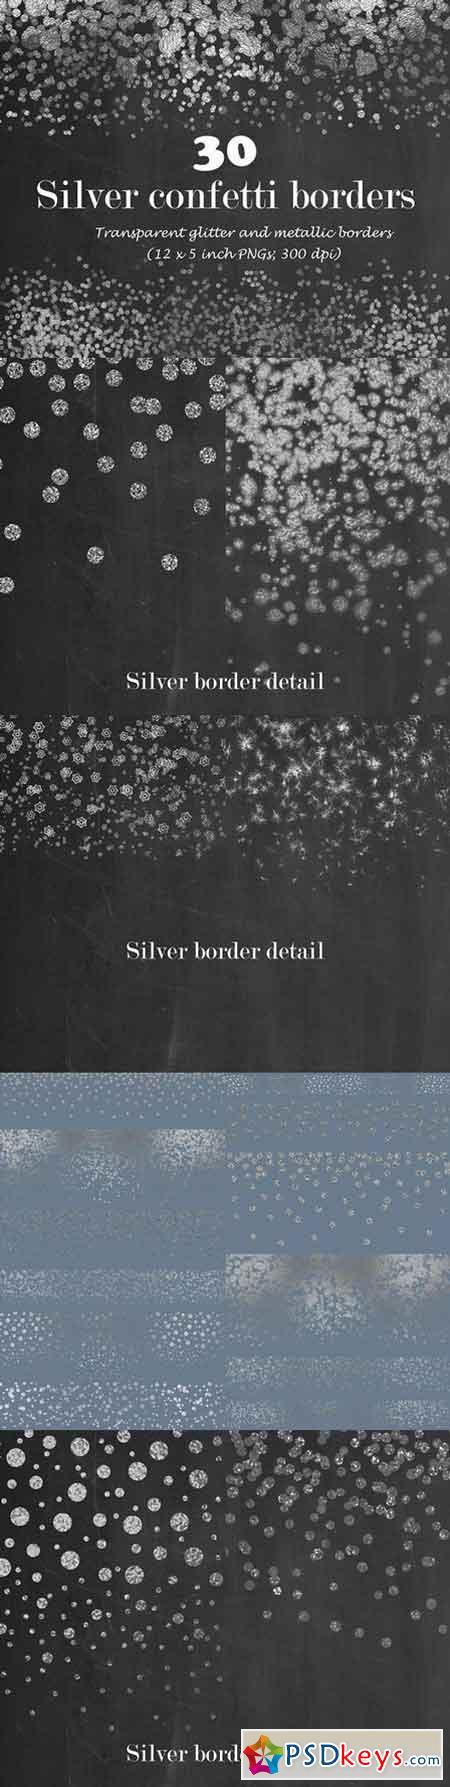 Silver confetti border overlay 1110060